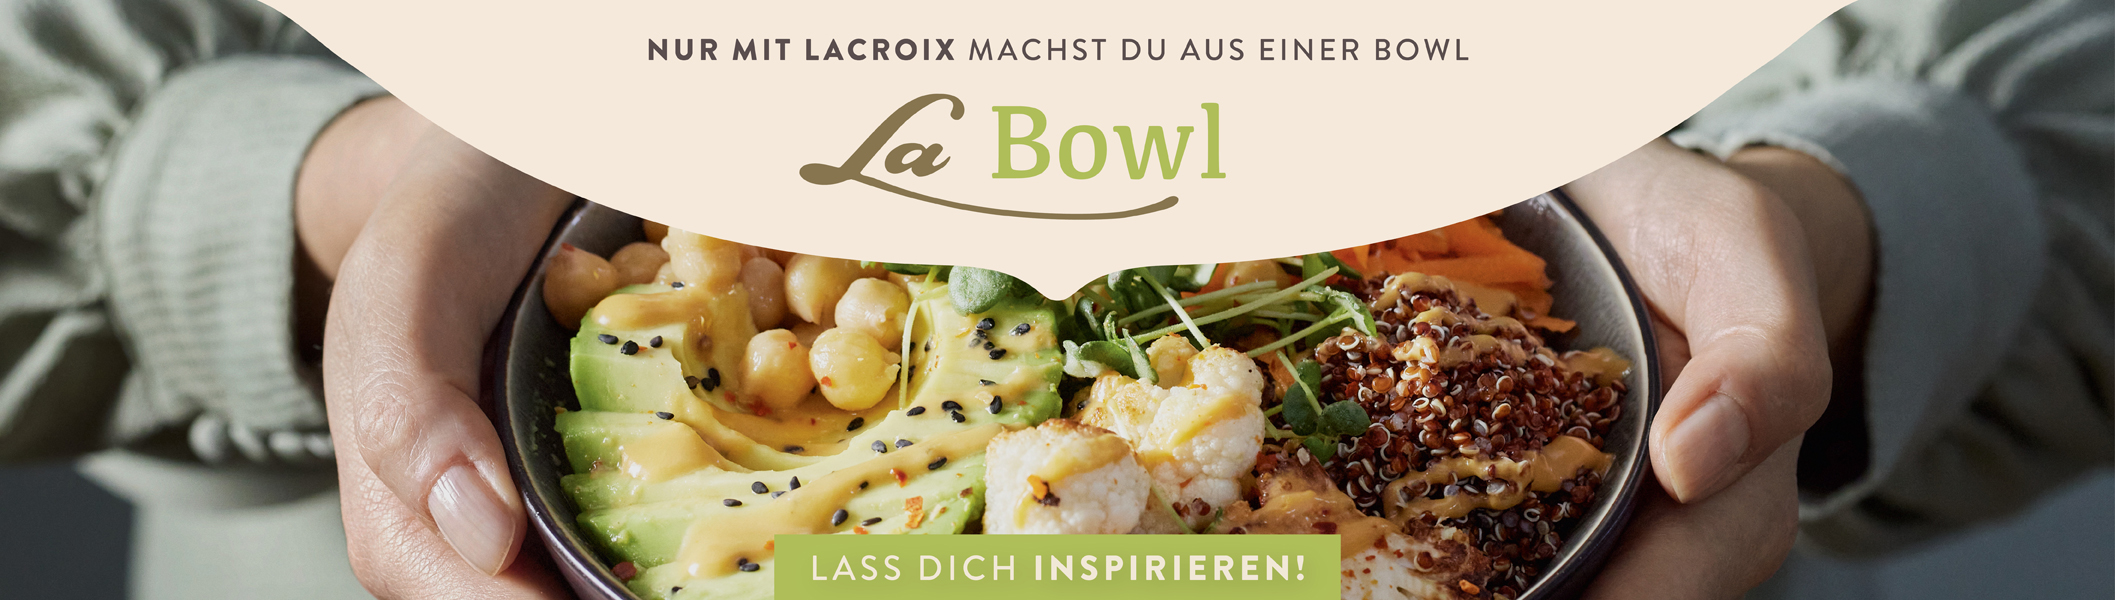 Lacroix Rainbow Bowl mit Erdnuss Sauce mit Gemüse Fond